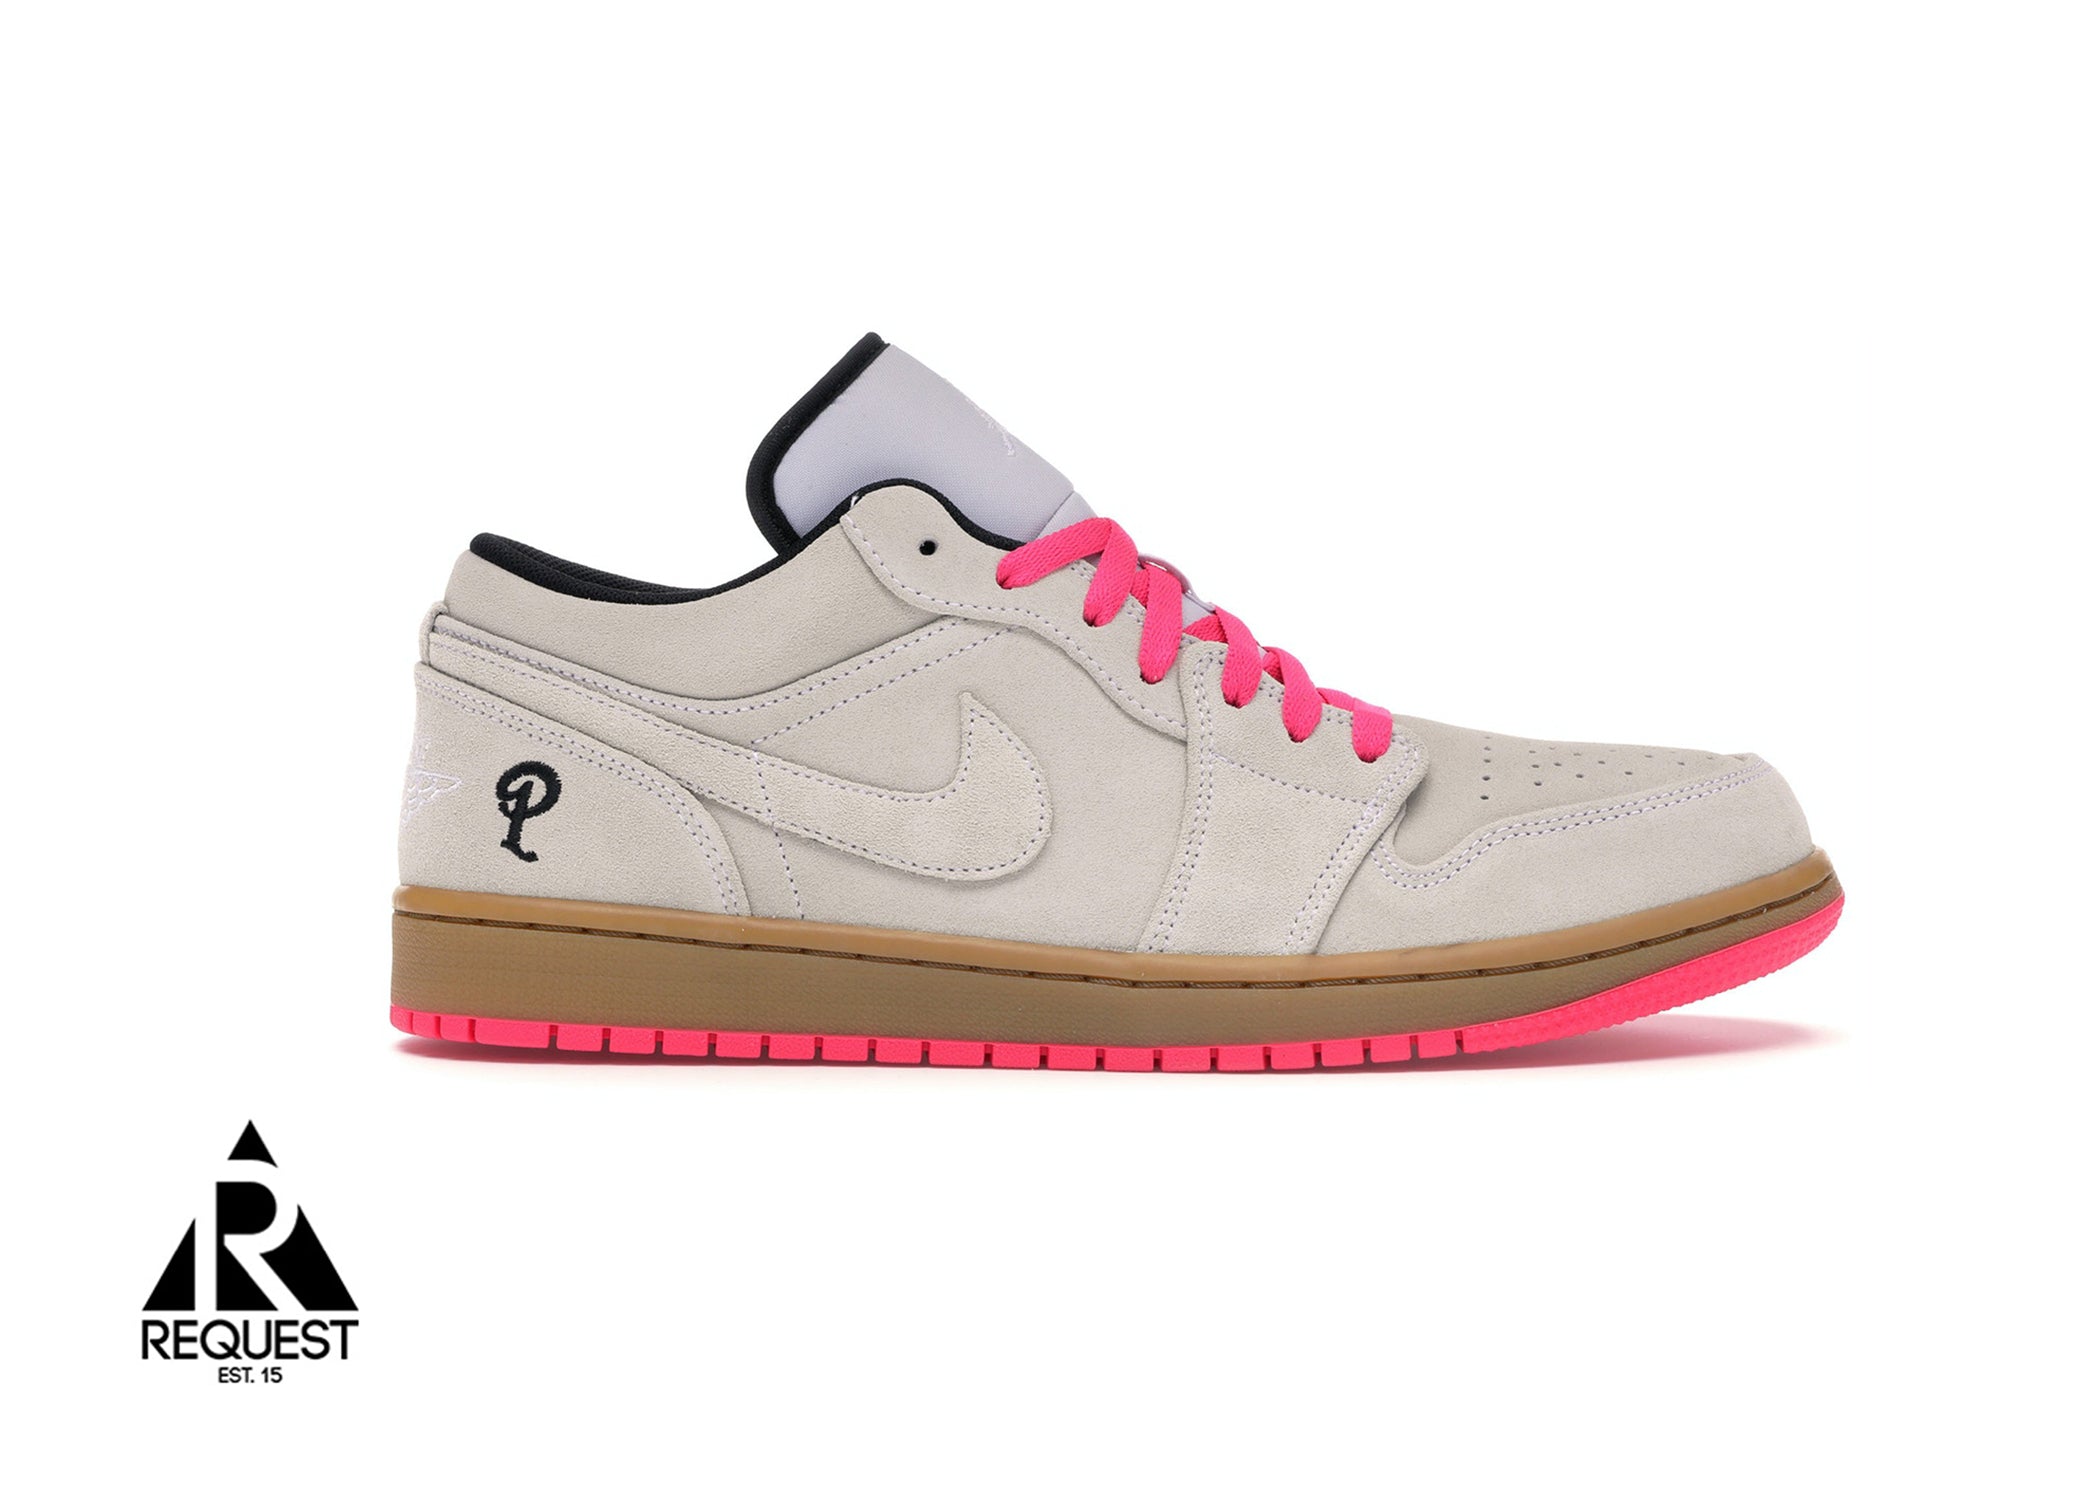 Air Jordan 1 Low “Sneaker Politics”